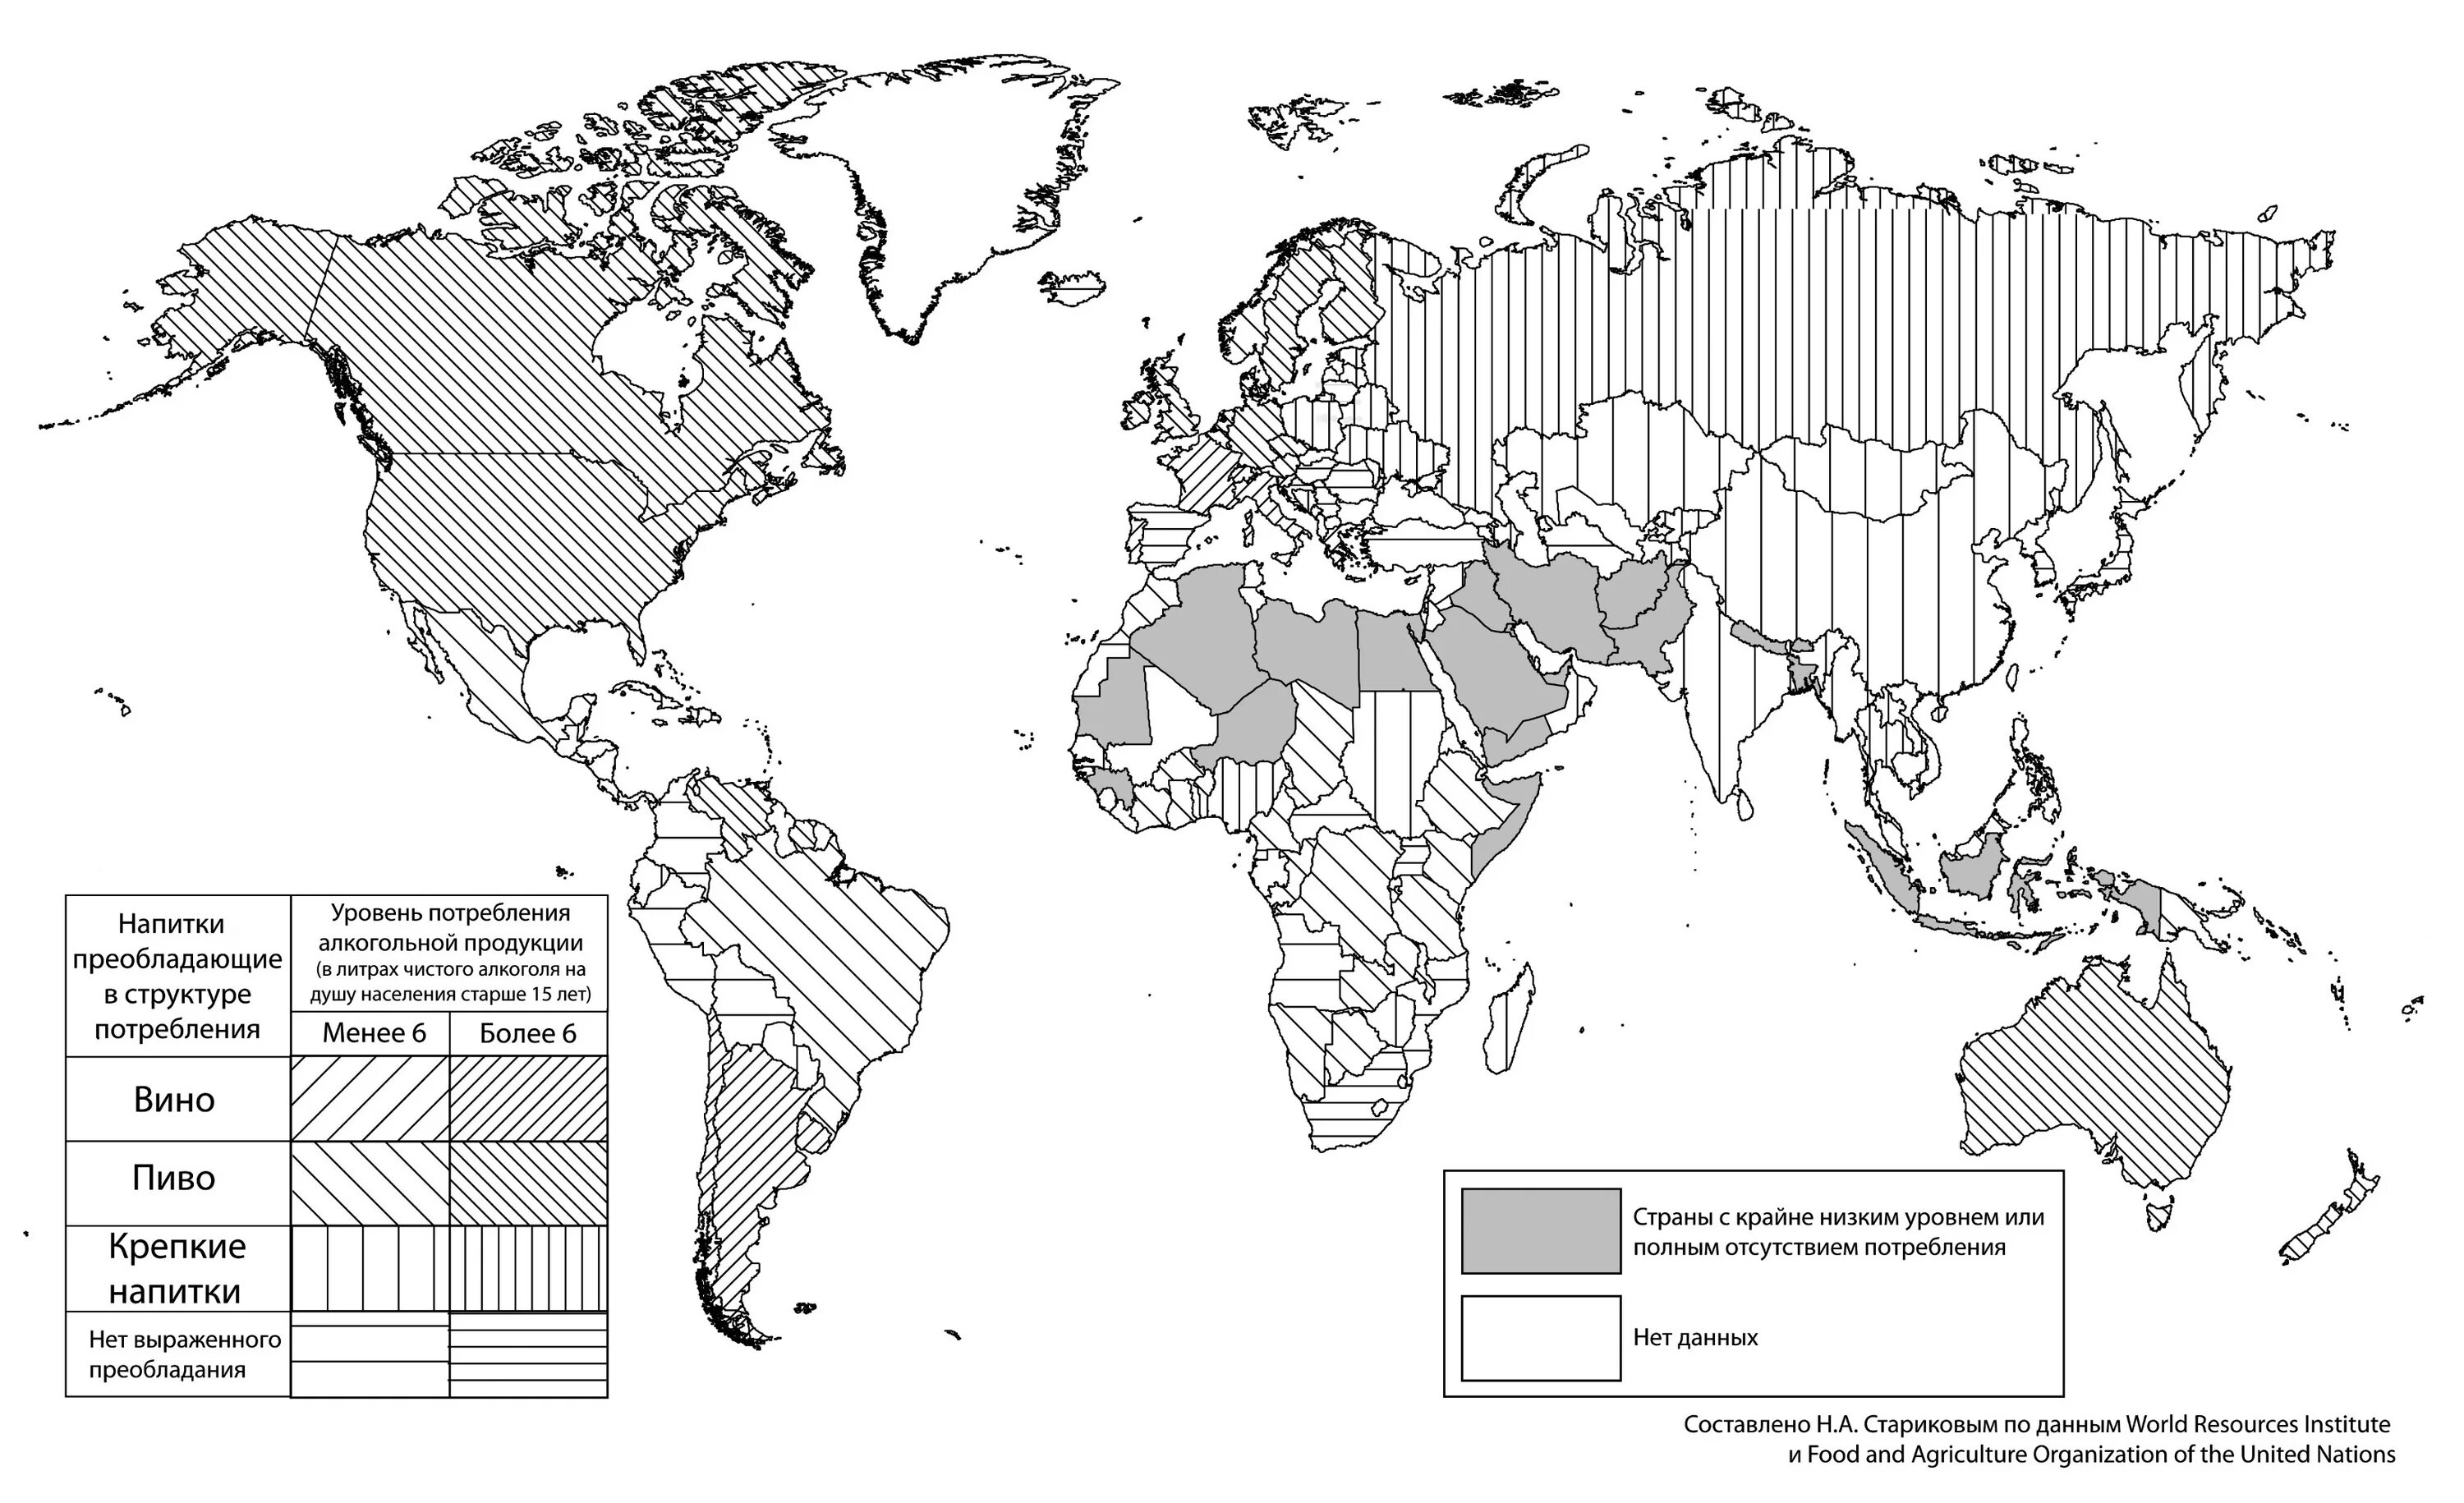 Центры мирового хозяйства. 10 Центров мирового хозяйства. Центры мирового хозяйства на карте.